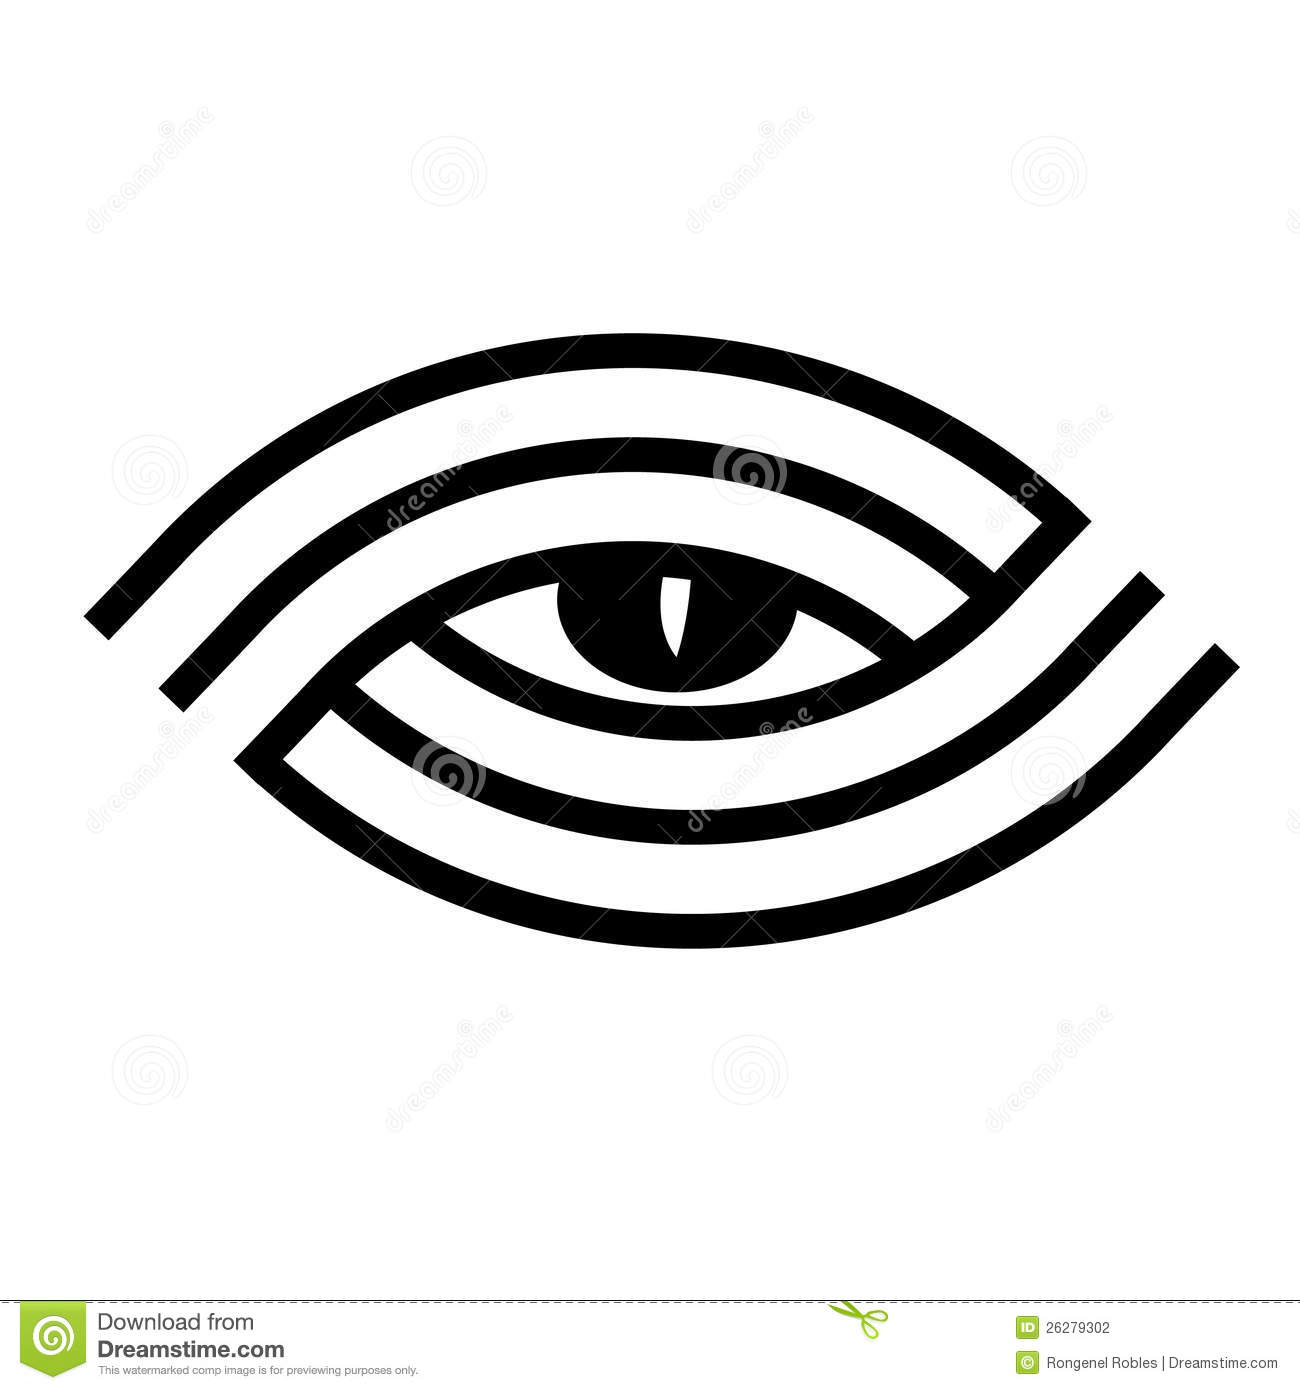 eye-logo-26279302.jpg